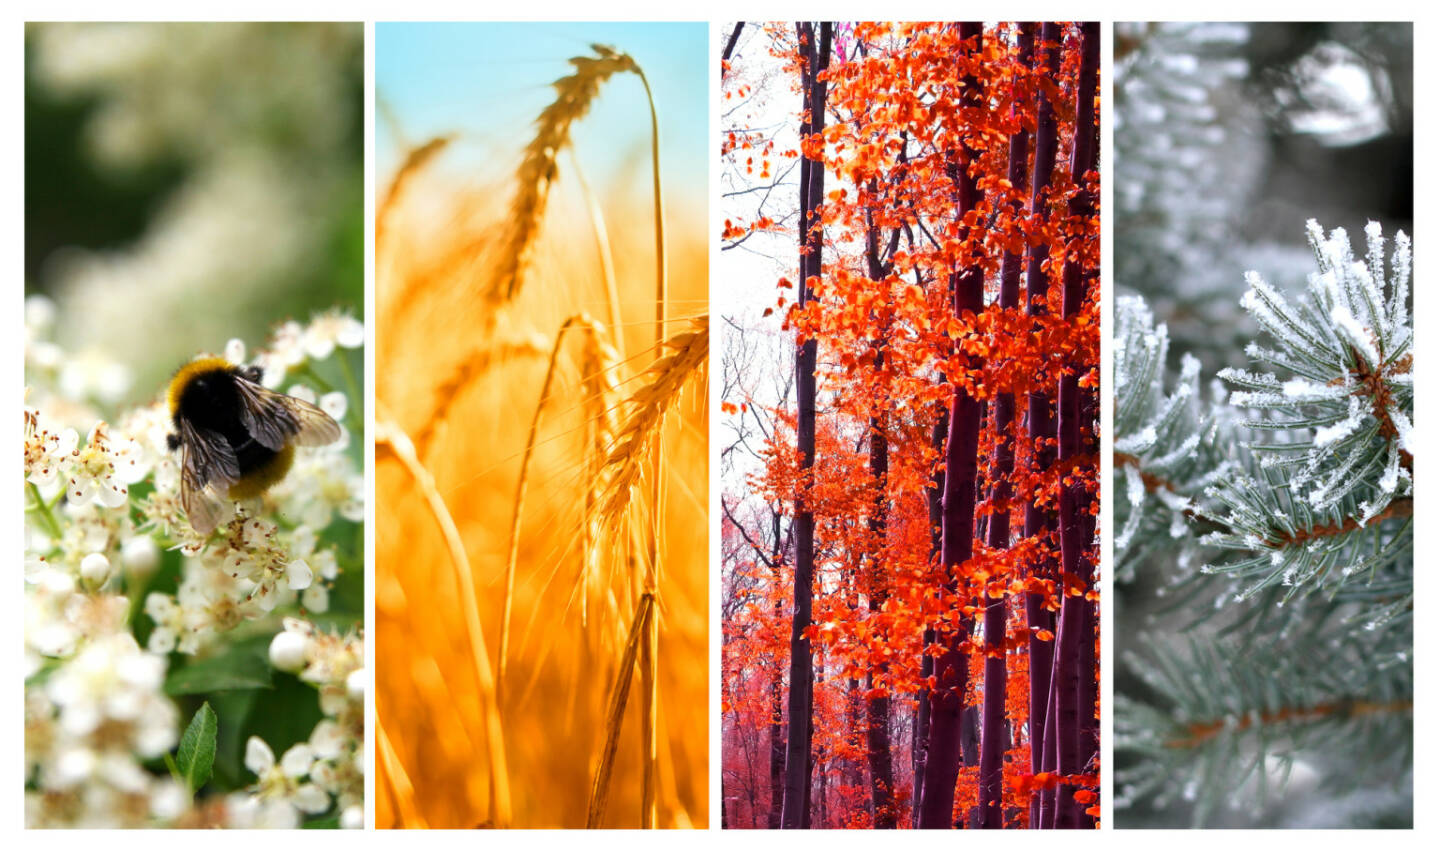 Vier Jahreszeiten: Frühling, Sommer, Herbst und Winter - https://de.depositphotos.com/42457073/stock-photo-four-seasons-spring-summer-autumn.html